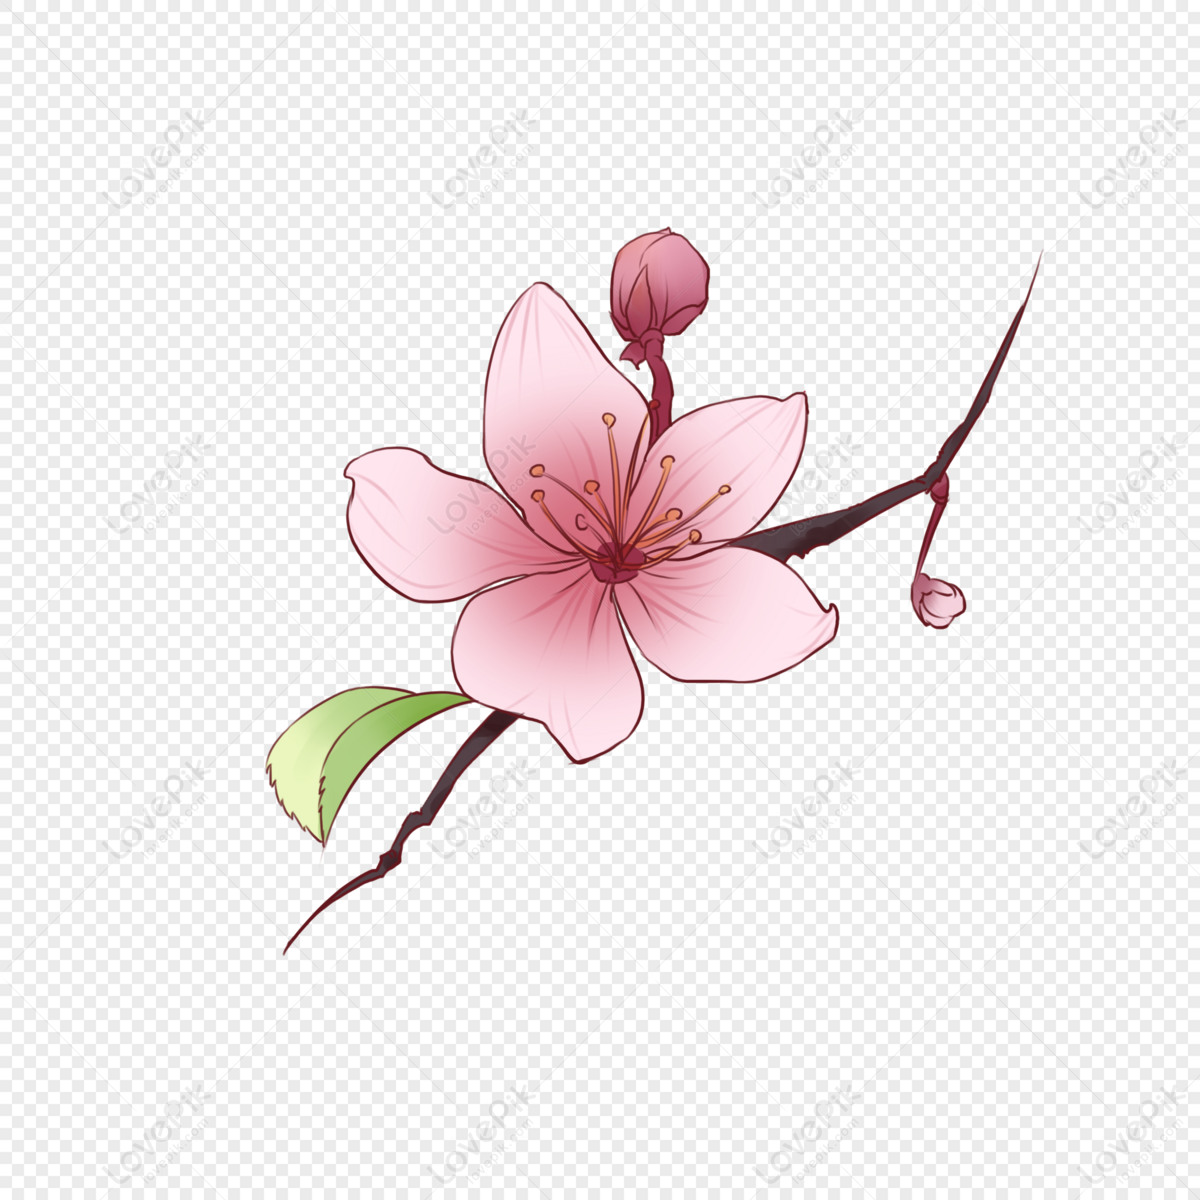 Bạn muốn tìm kiếm hình ảnh hoa đào PNG miễn phí? Chúng tôi cung cấp những bức tranh hoa đào PNG đẹp và miễn phí cho các bạn sử dụng. Với những bức tranh hoa đào PNG này, bạn có thể tạo ra các thiết kế phong cách riêng của mình. Hãy tải xuống ngay để tận hưởng sự đẹp của hoa đào.